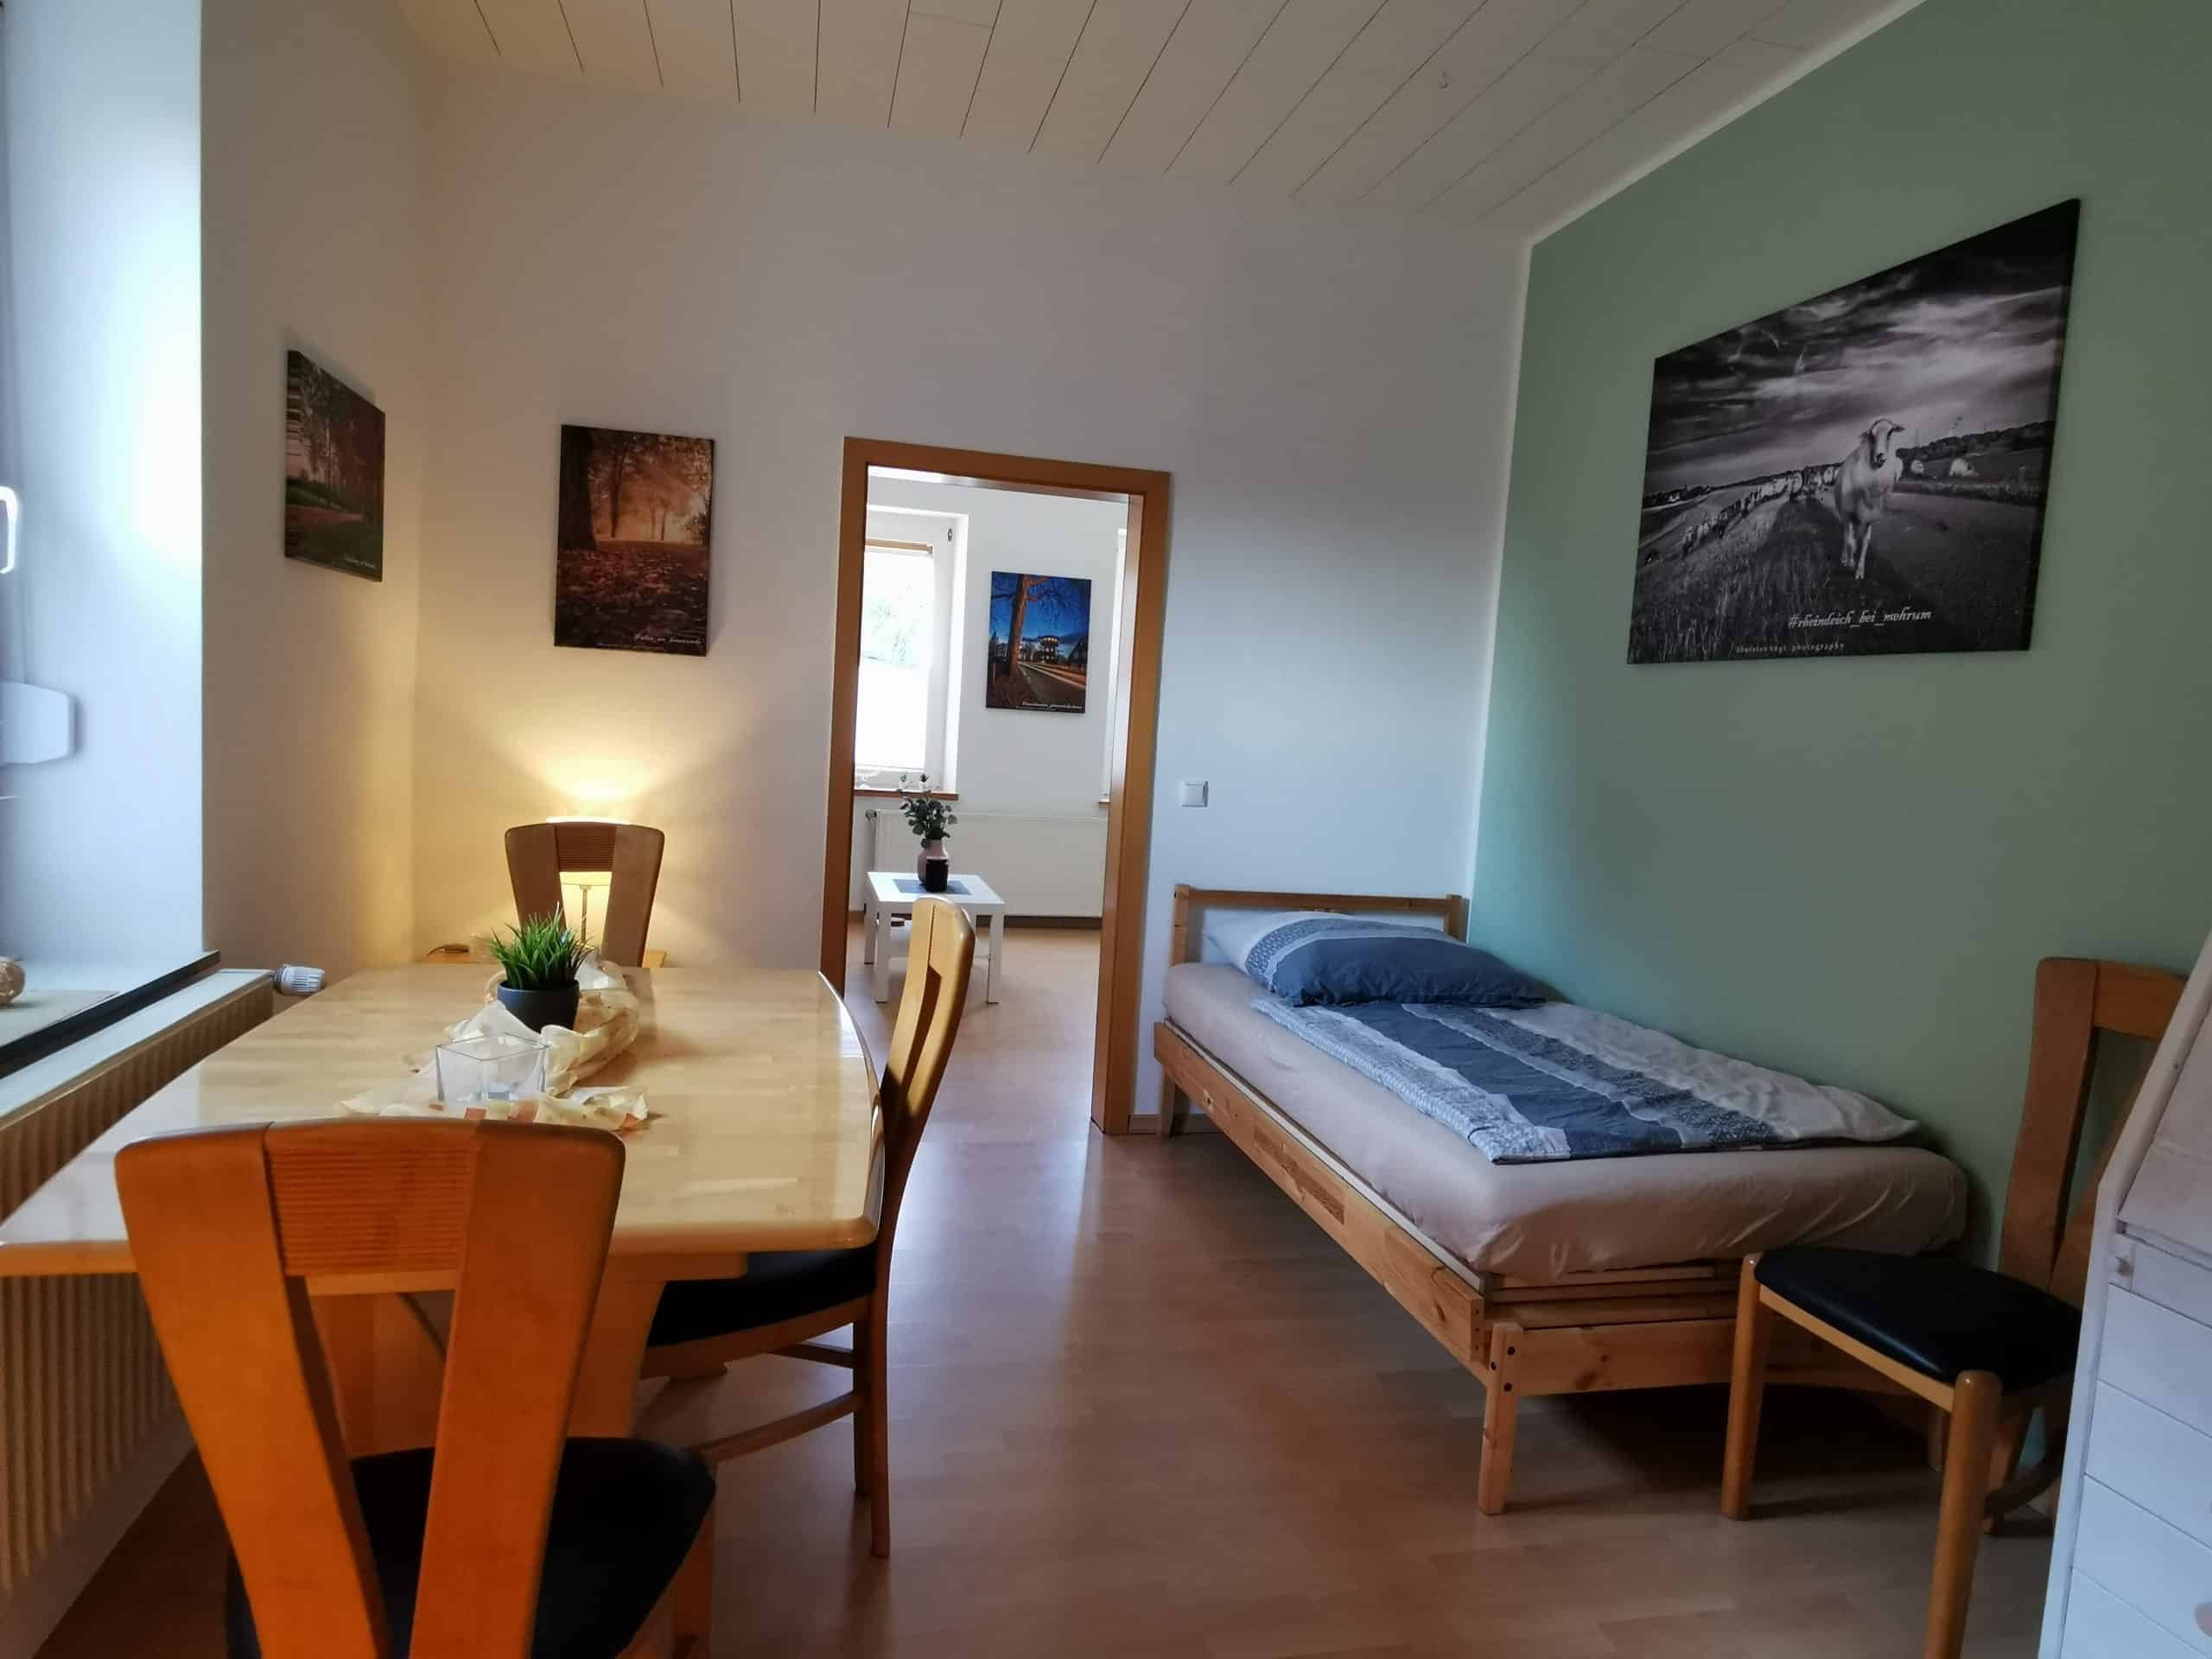 Das Bild zeigt ein Schlafzimmer der Gästewohnung am Mommbach